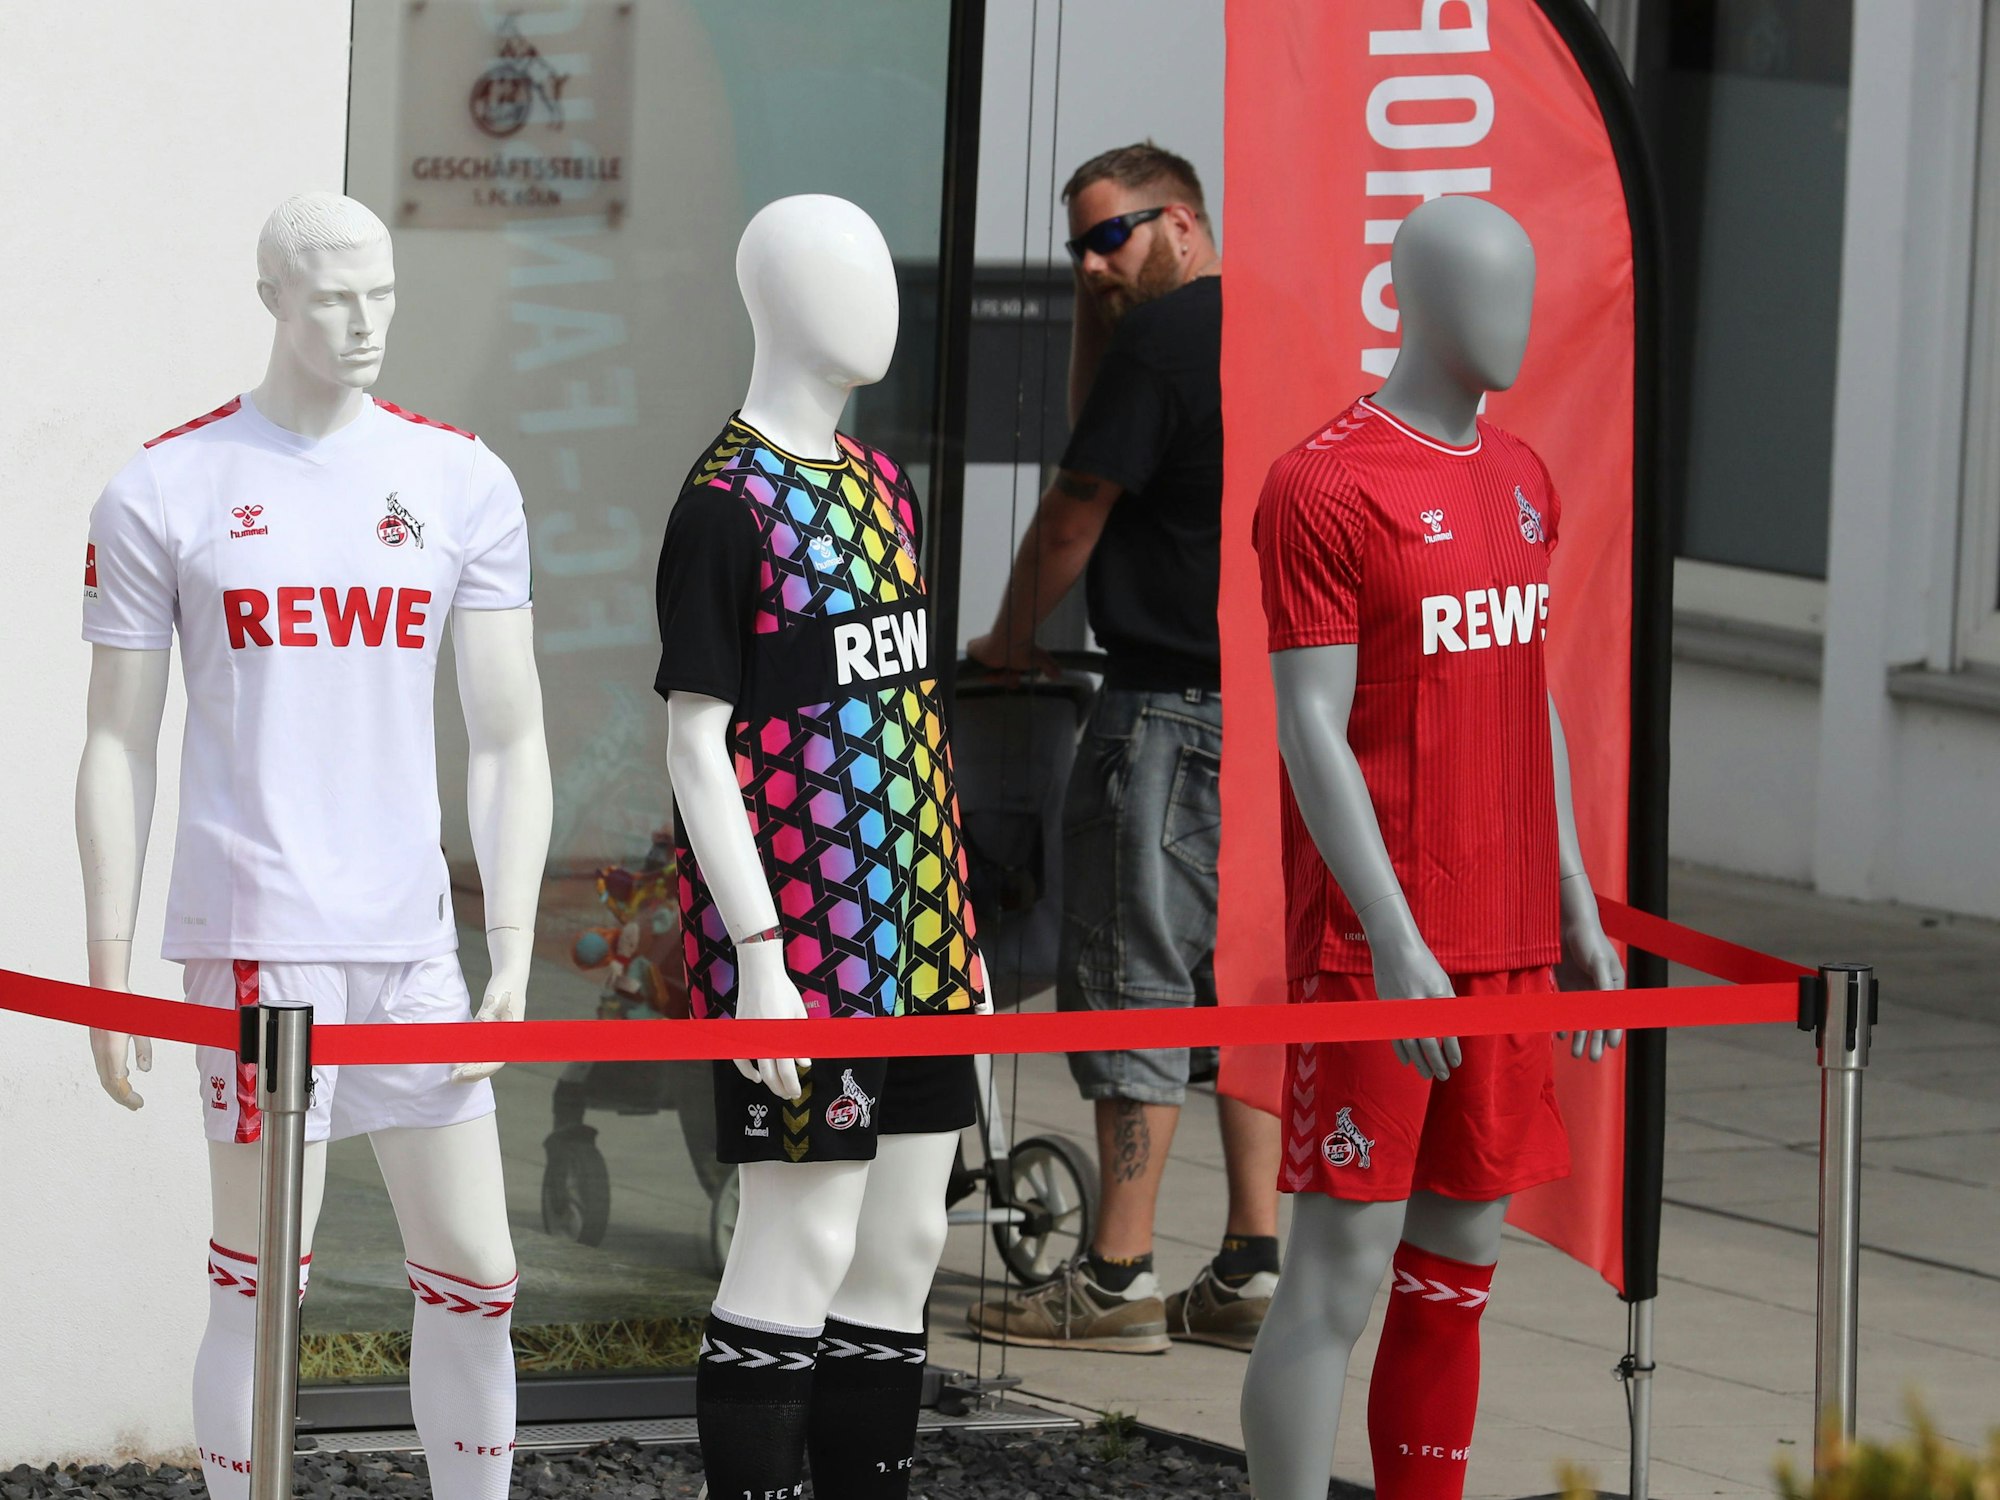 Die drei Trikots des 1. FC Köln vor einem Fanshop in Köln.